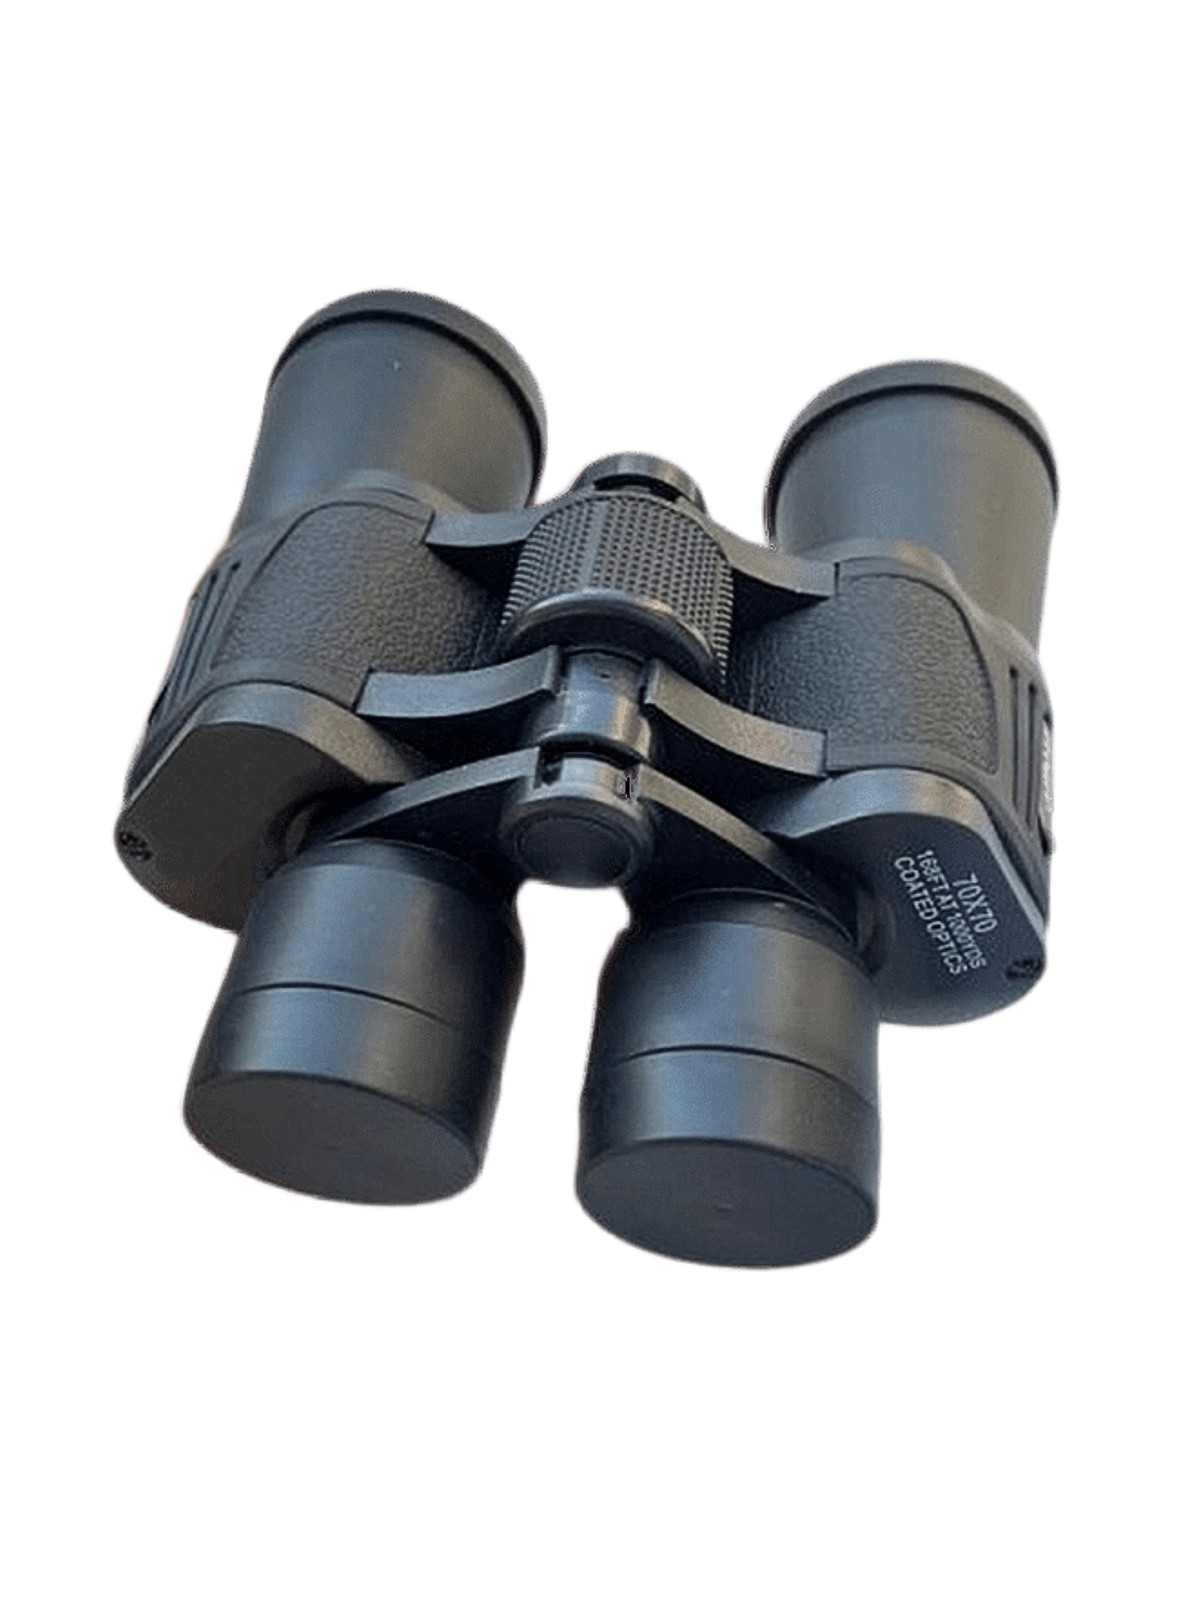 Бинокль туристический Binoculars 70х70 в чехле для путешествий и охоты